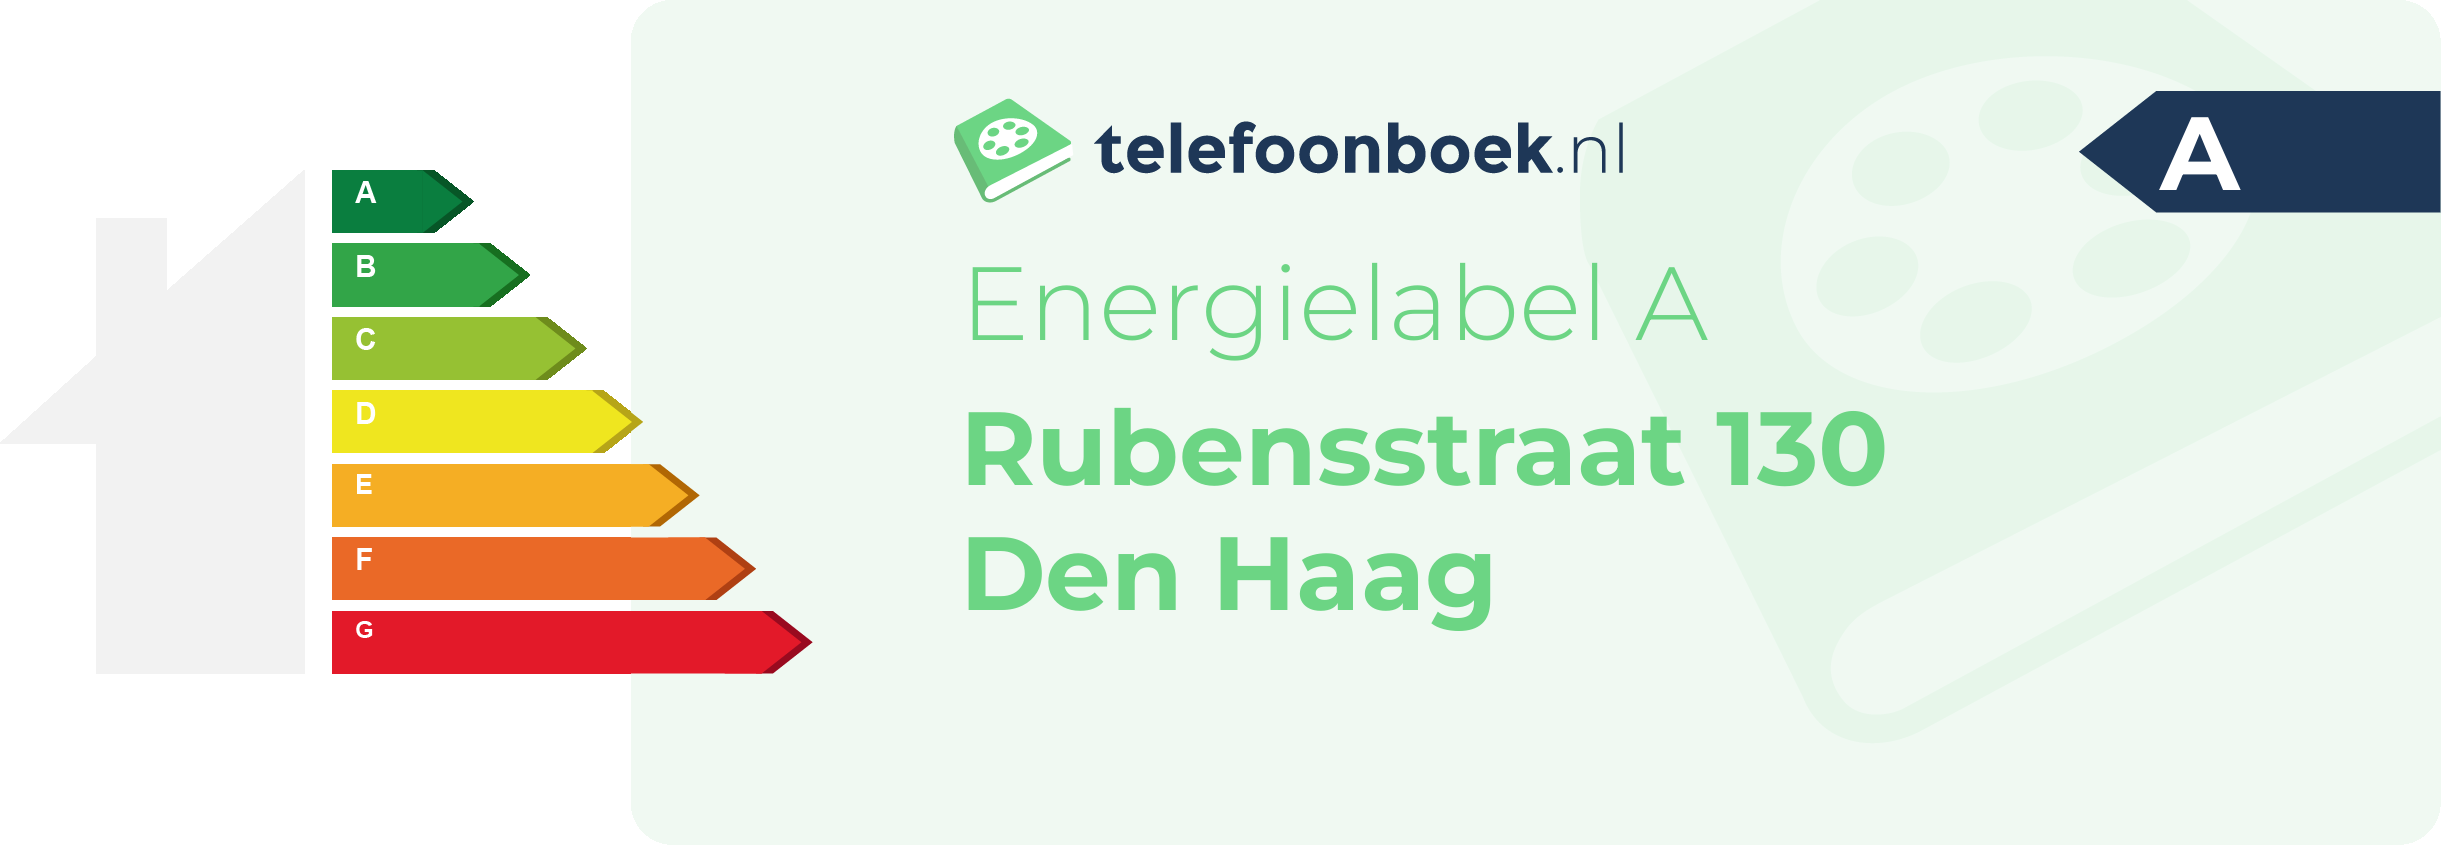 Energielabel Rubensstraat 130 Den Haag